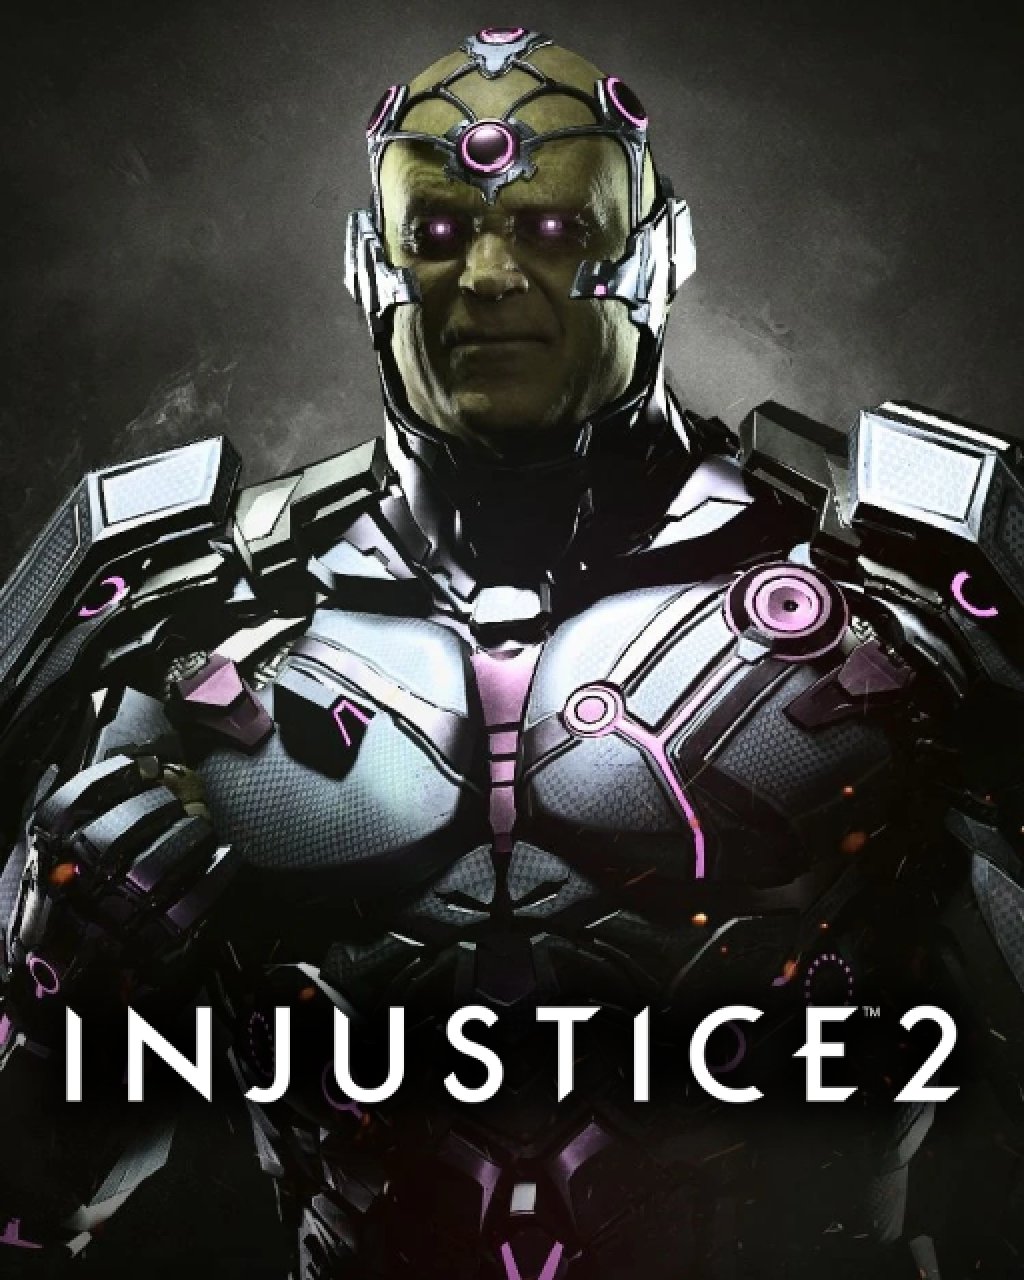 ESD Injustice 2 Brainiac